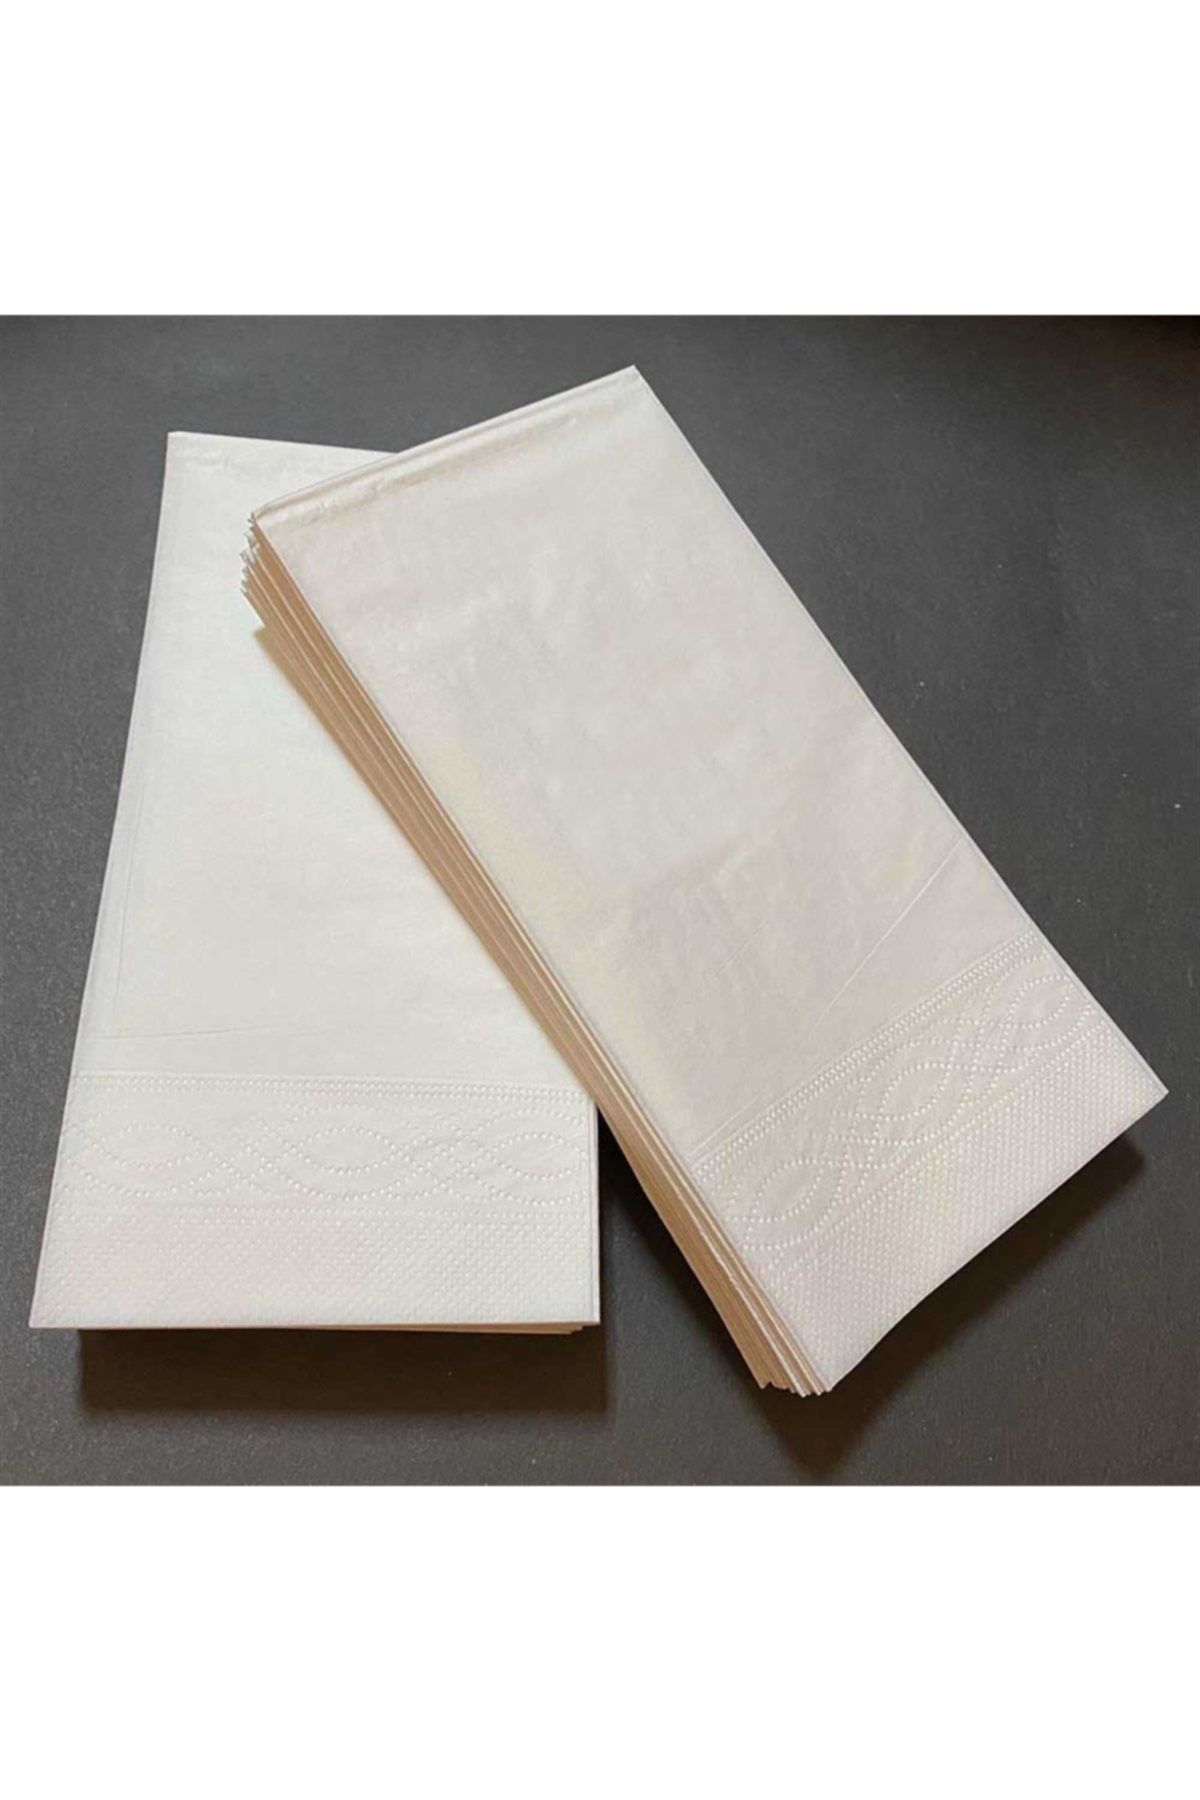 Soft Kağıt Goya Soft 33*33 1/8 Beyaz Garson Katlama Peçete 2400 Adet